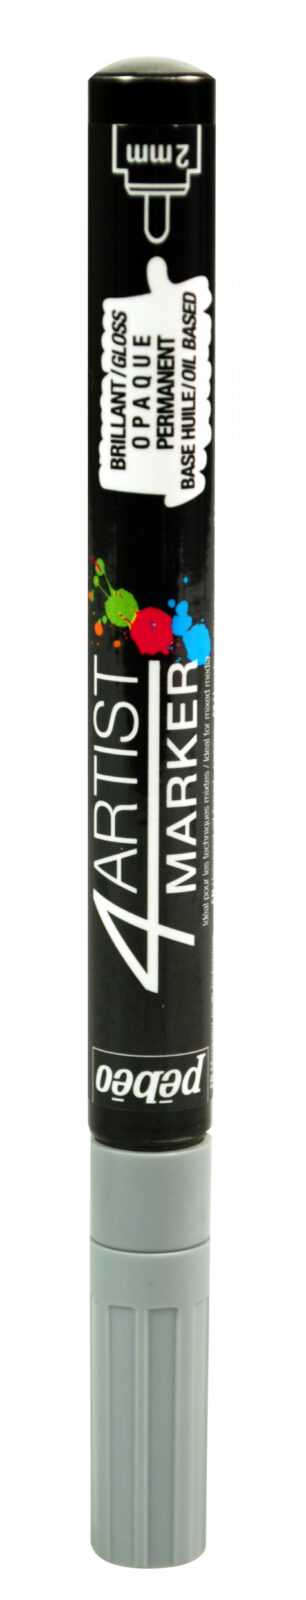 4Artist Marker 2 Mm Round Grey